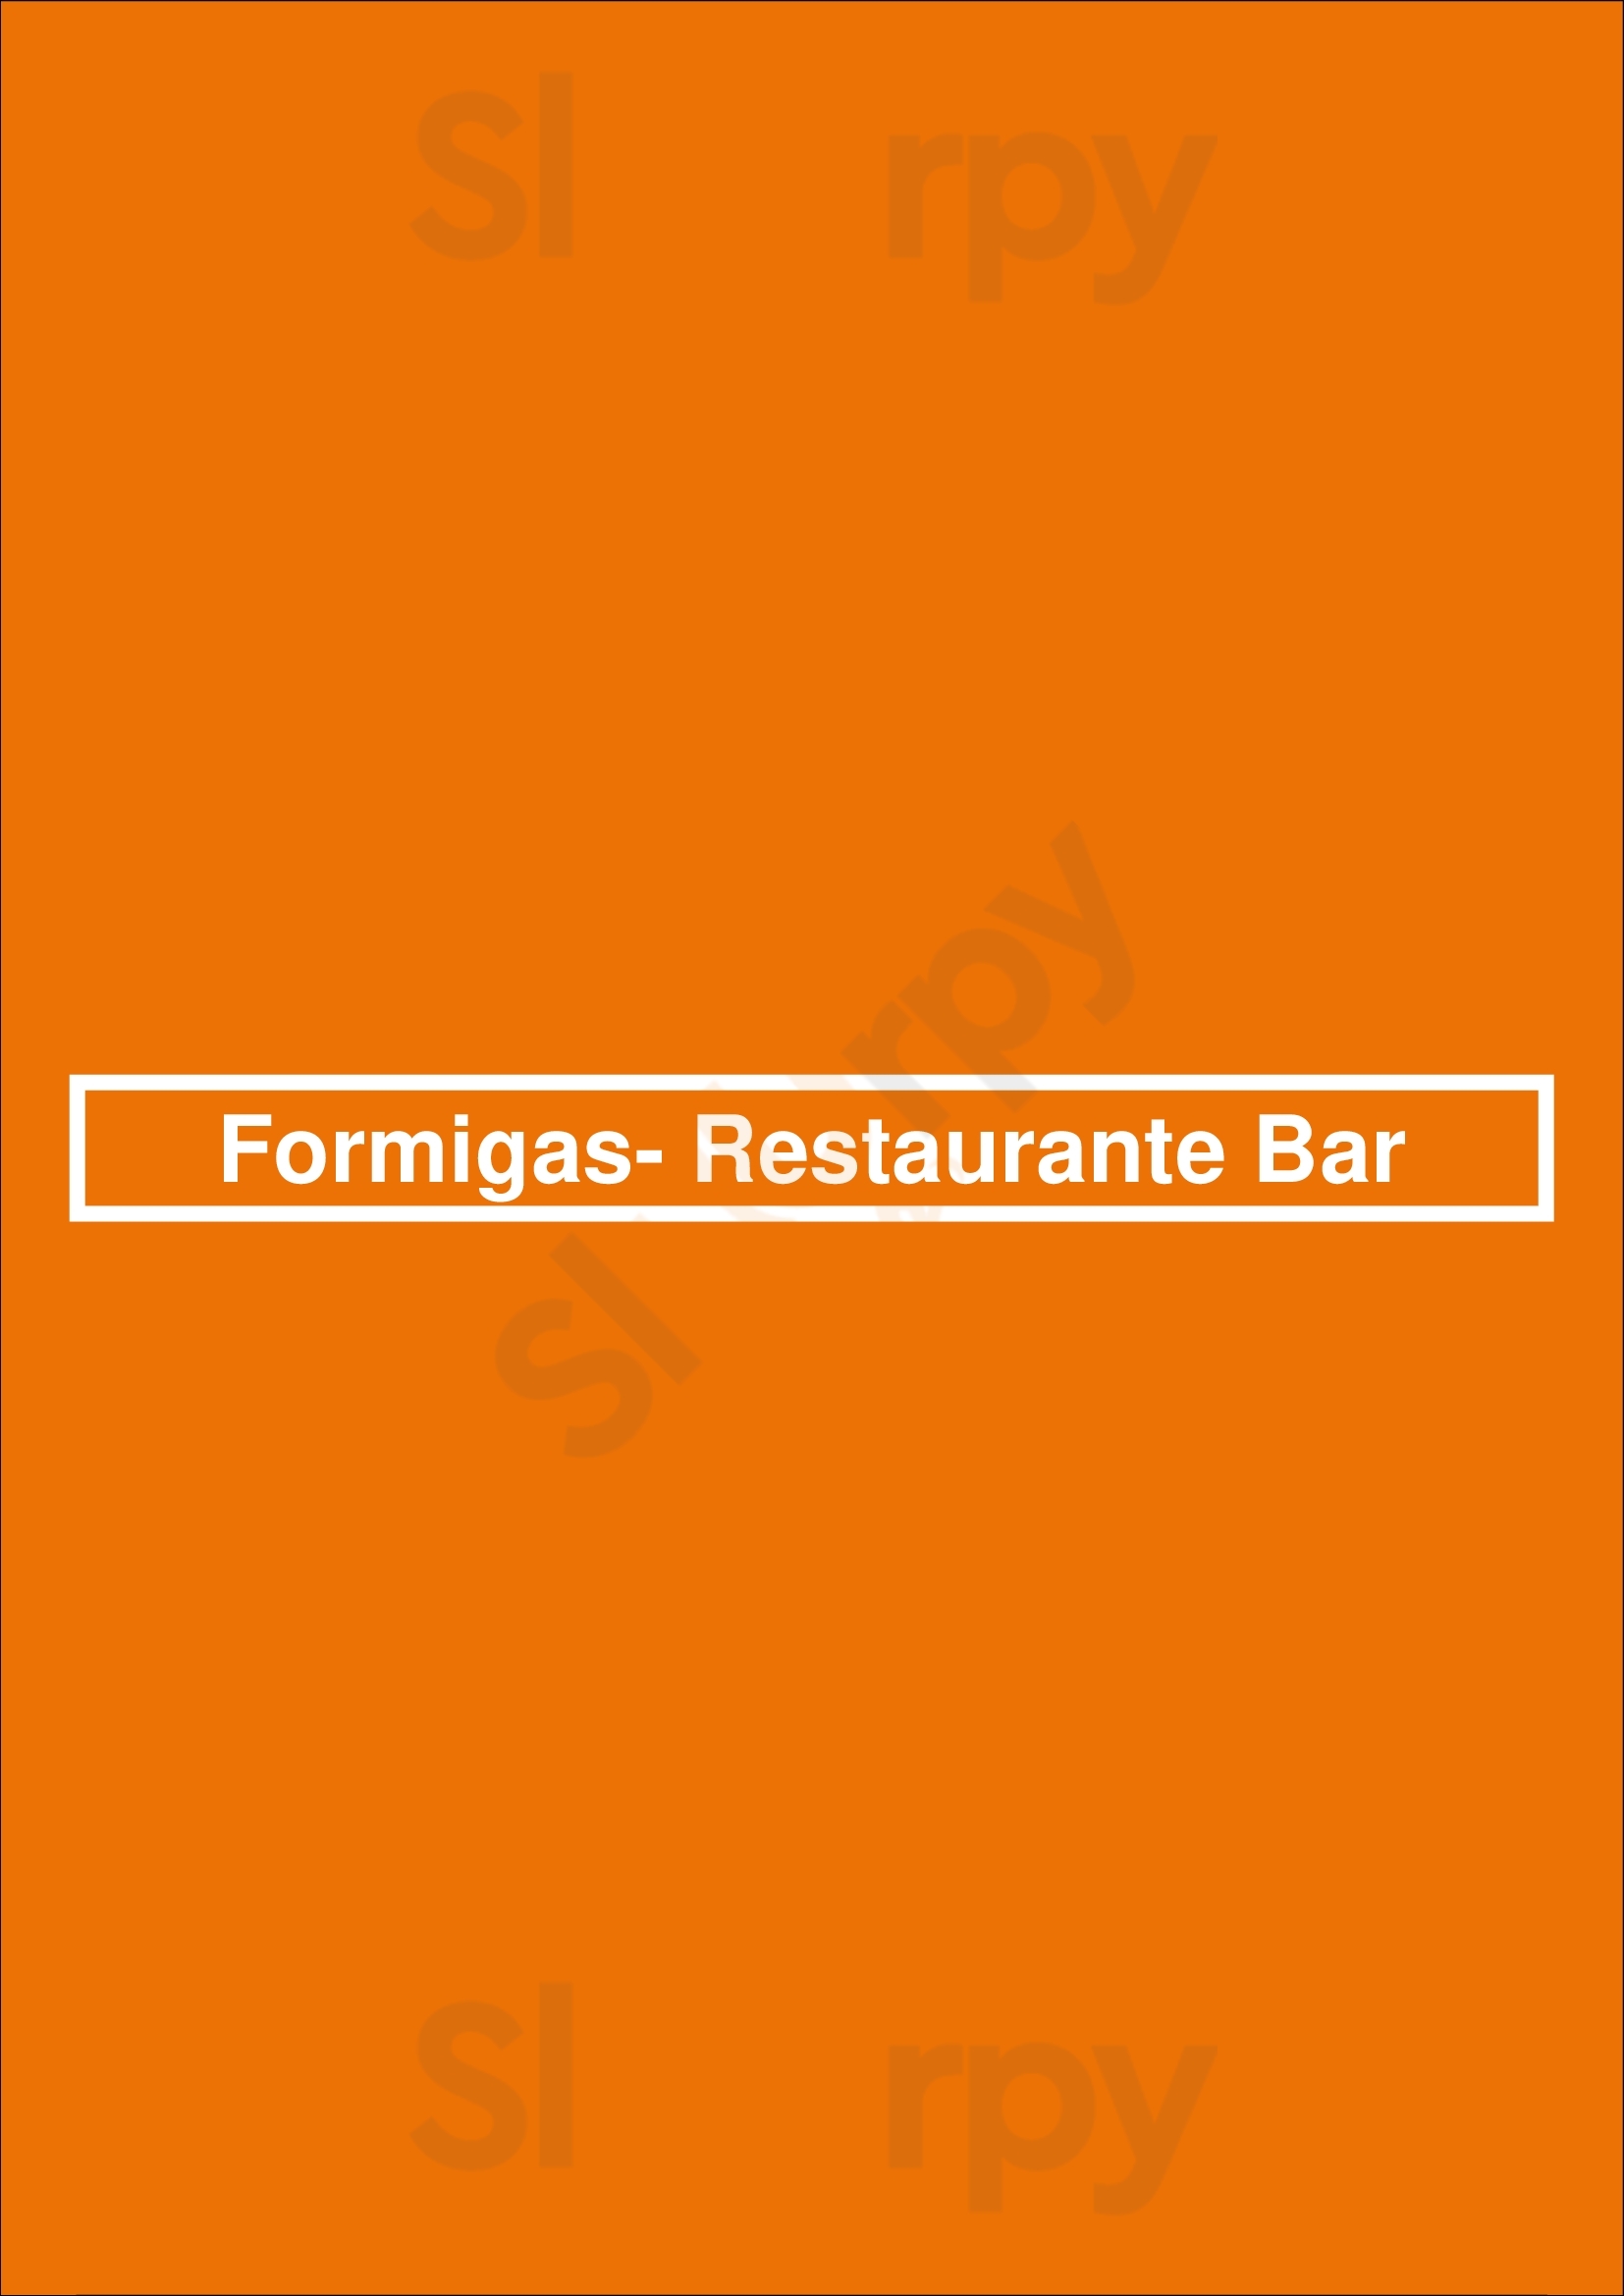 Formigas- Restaurante Bar Guimarães Menu - 1